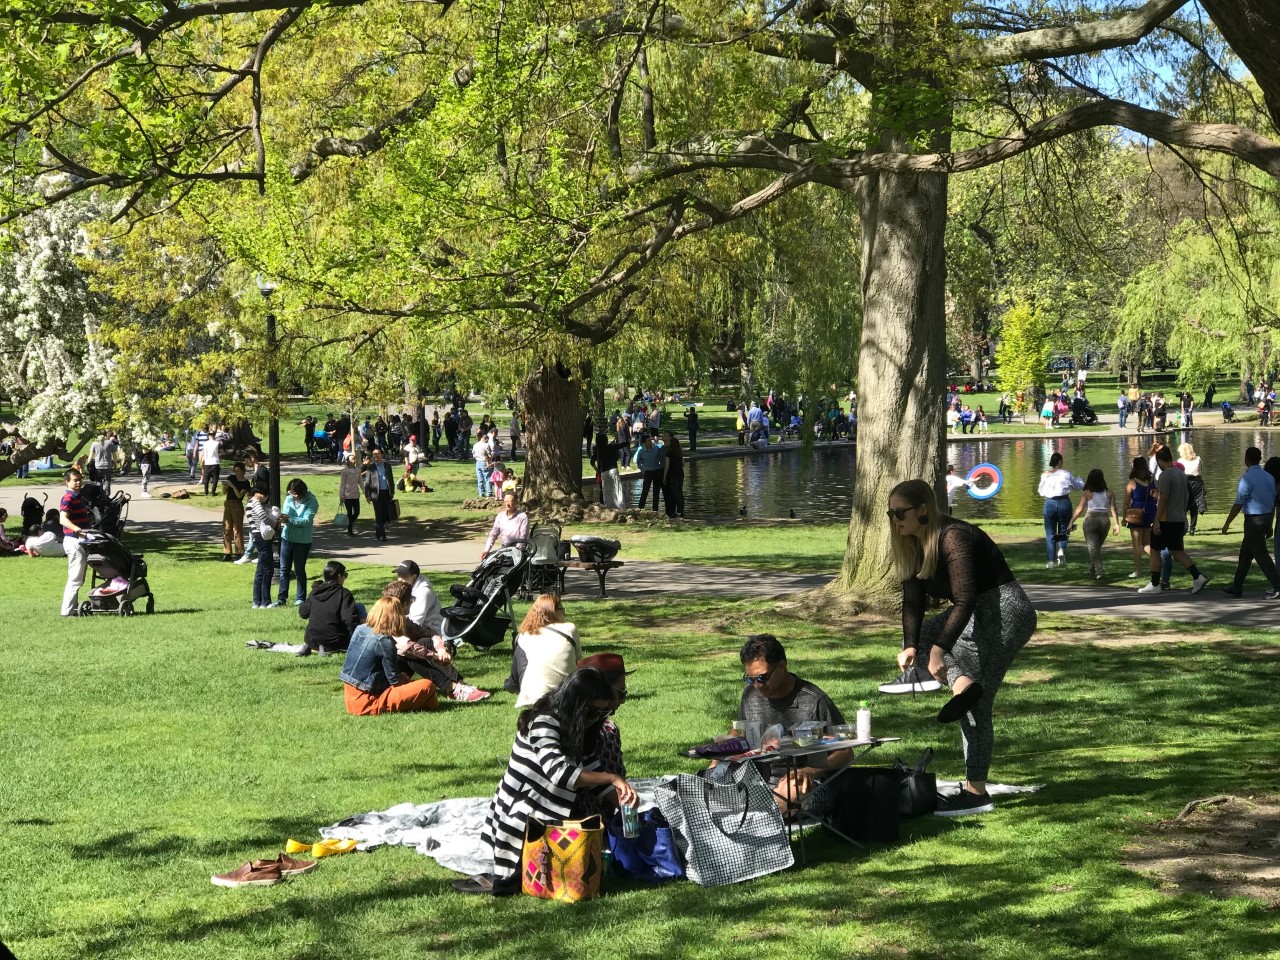 crowds in boston summer public garden.jpg